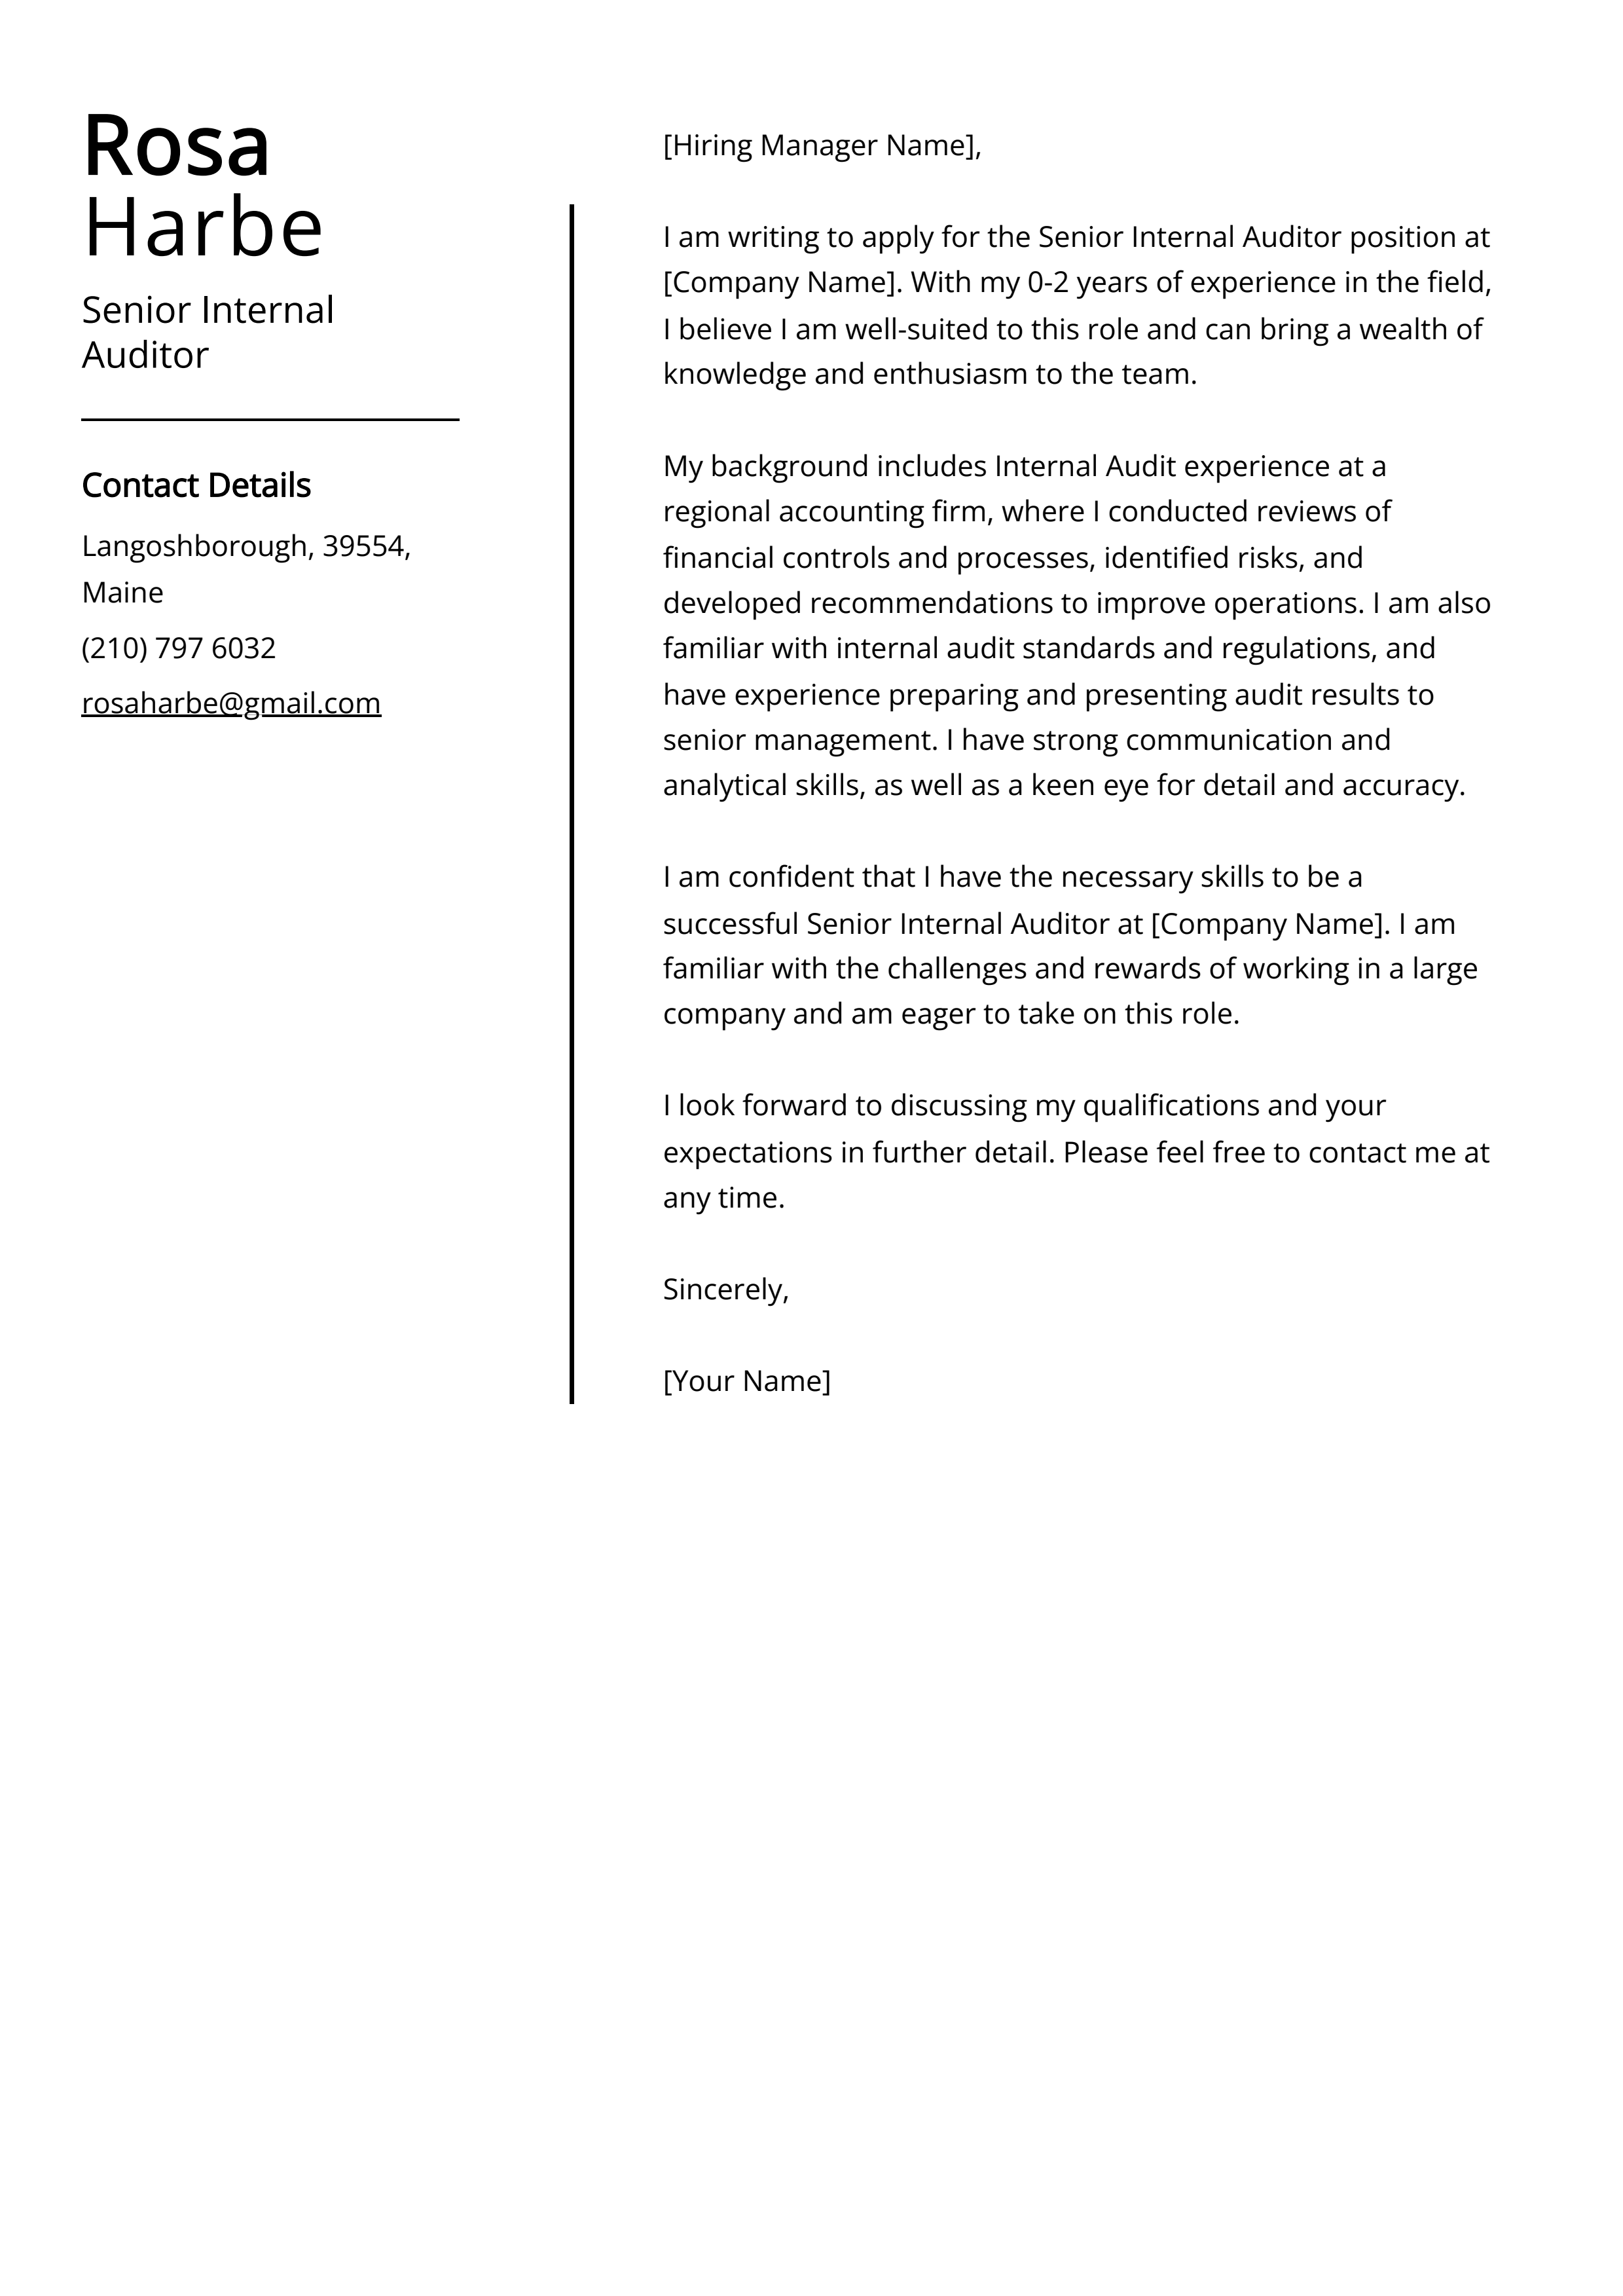 Senior Internal Auditor Cover Letter Example